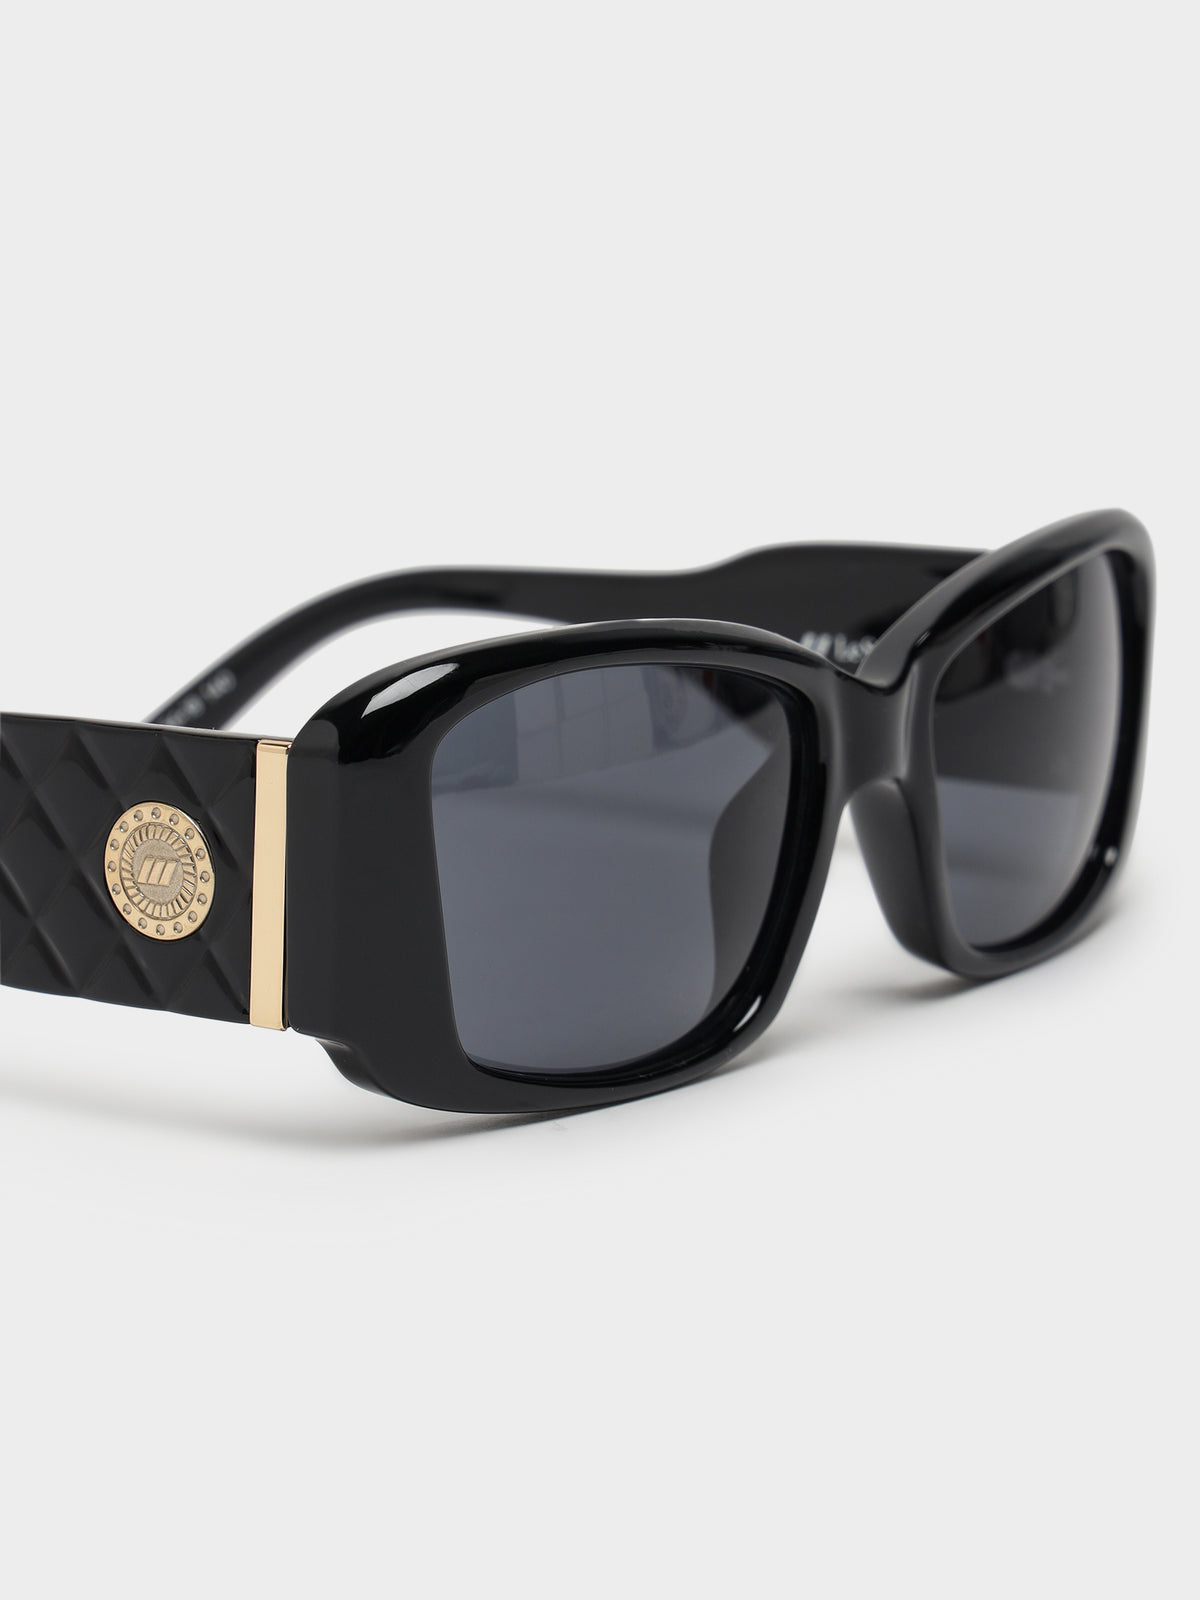 Noveau Riche Sunglasses in Black